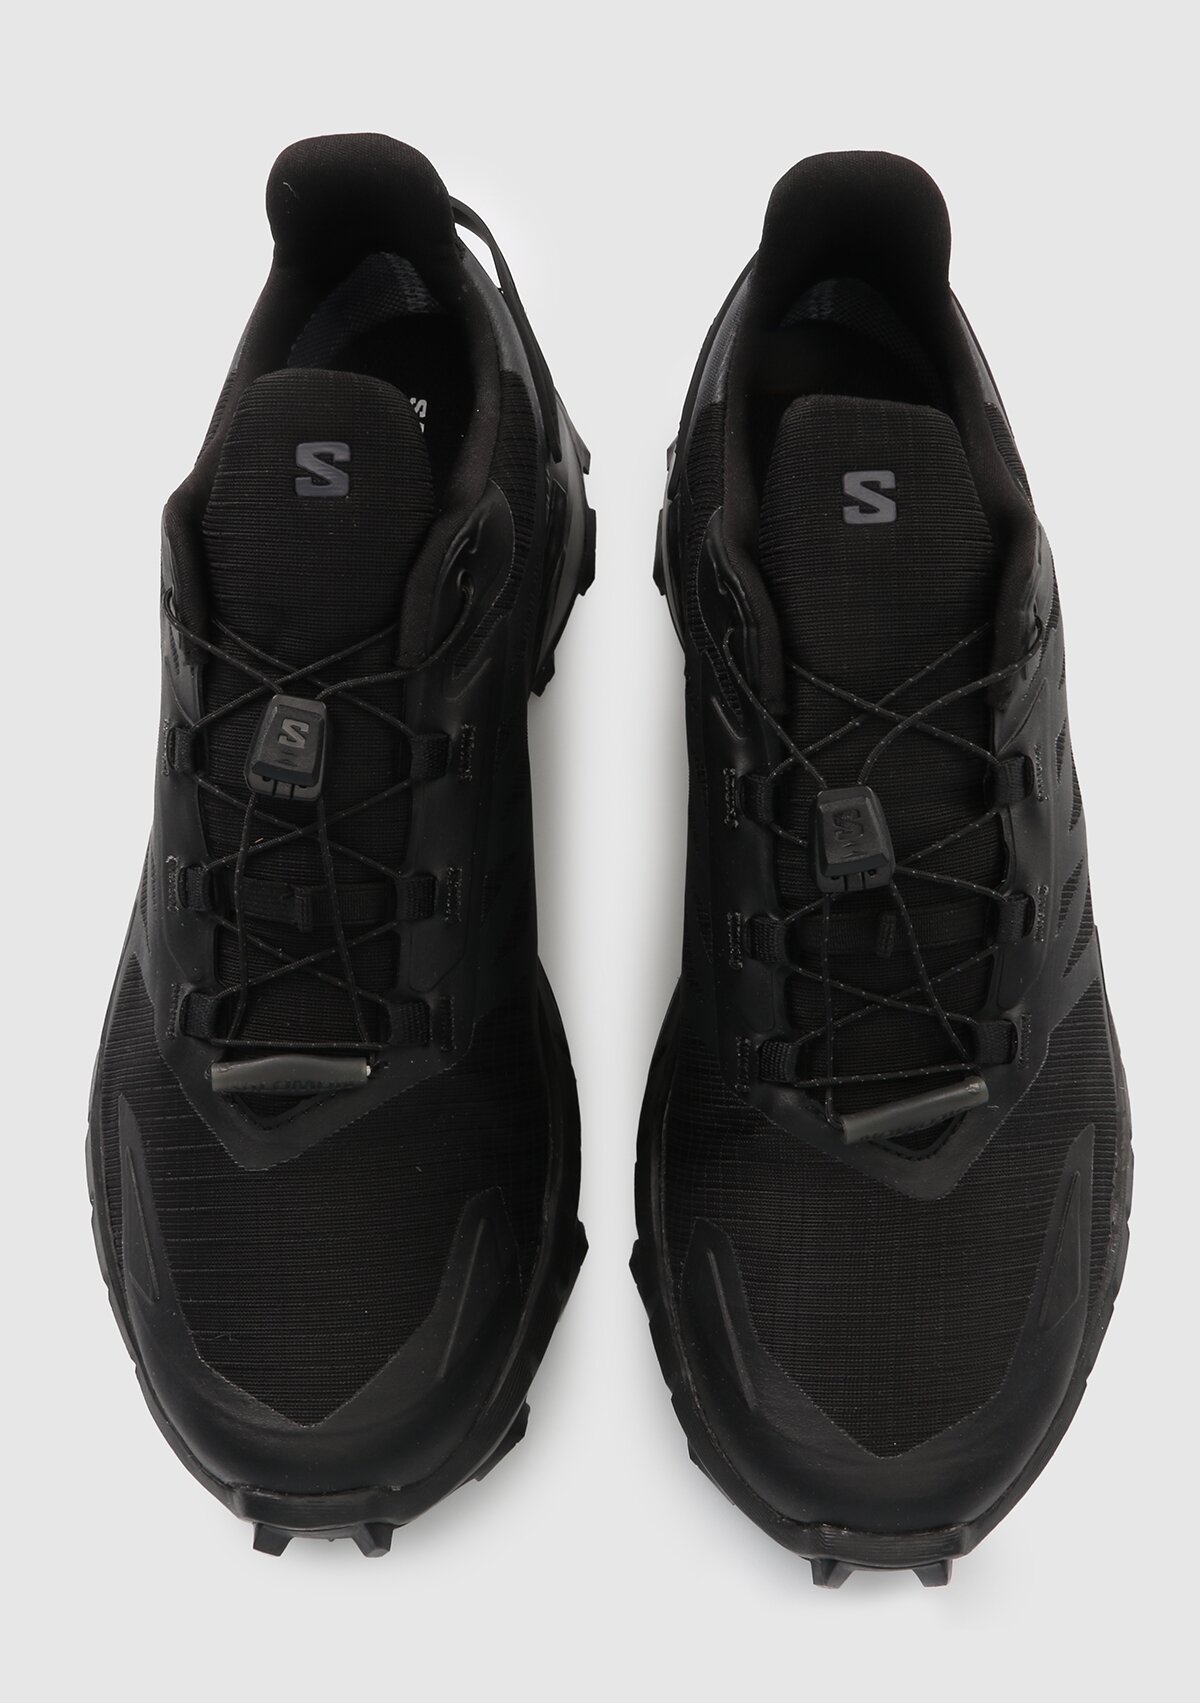 Salomon Supercross 4 Gtx Siyah Erkek Gore-Tex Koşu Ayakkabısı L41731600